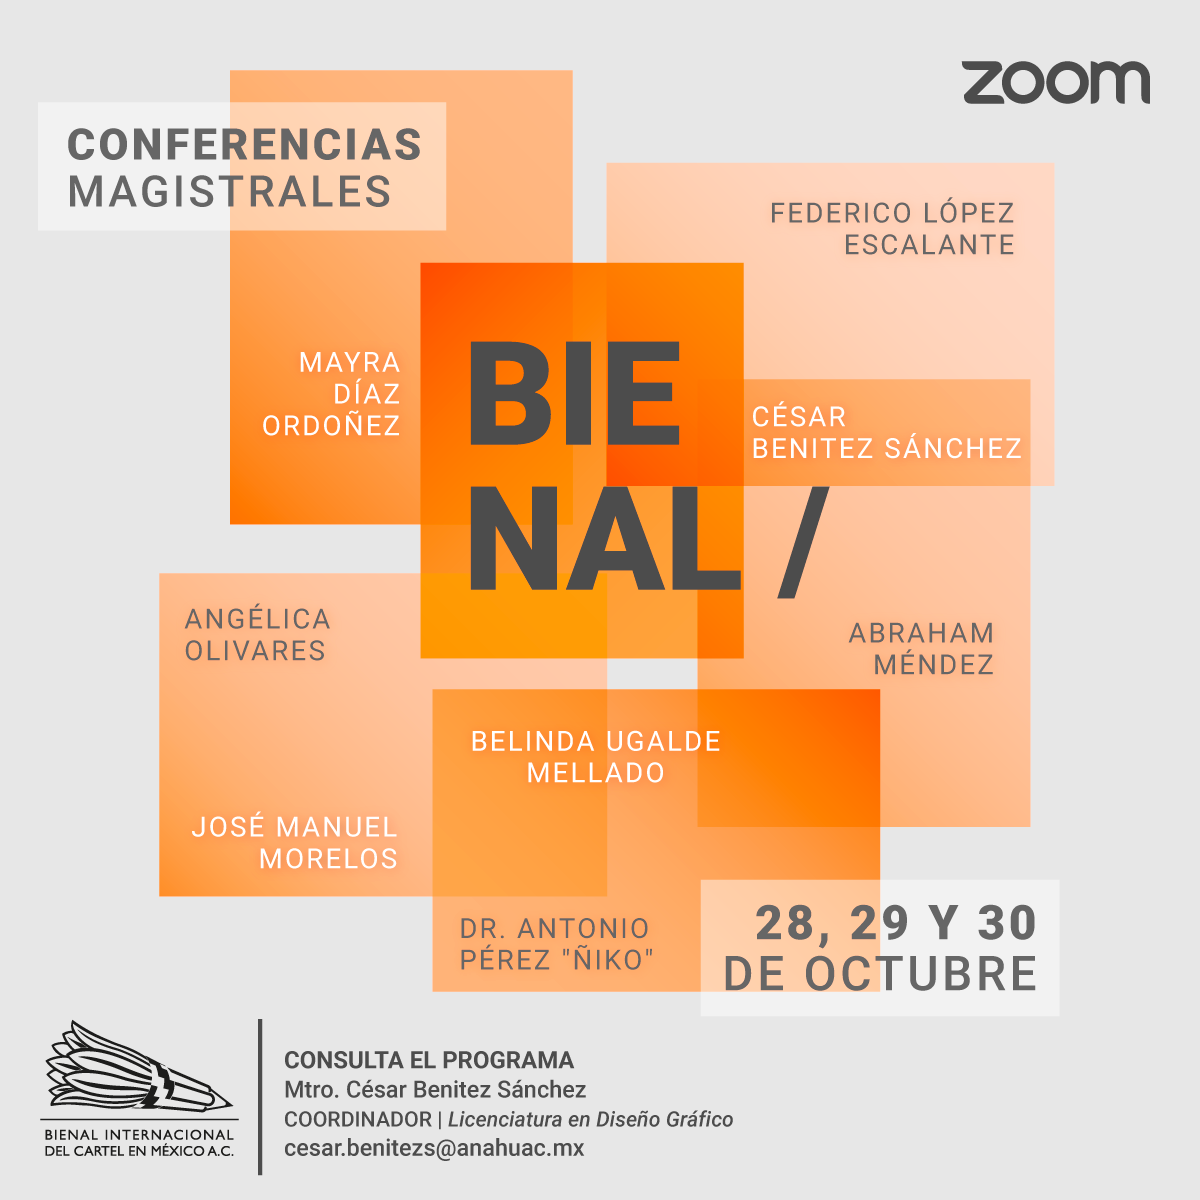 Bienal Internacional del Cartel en México